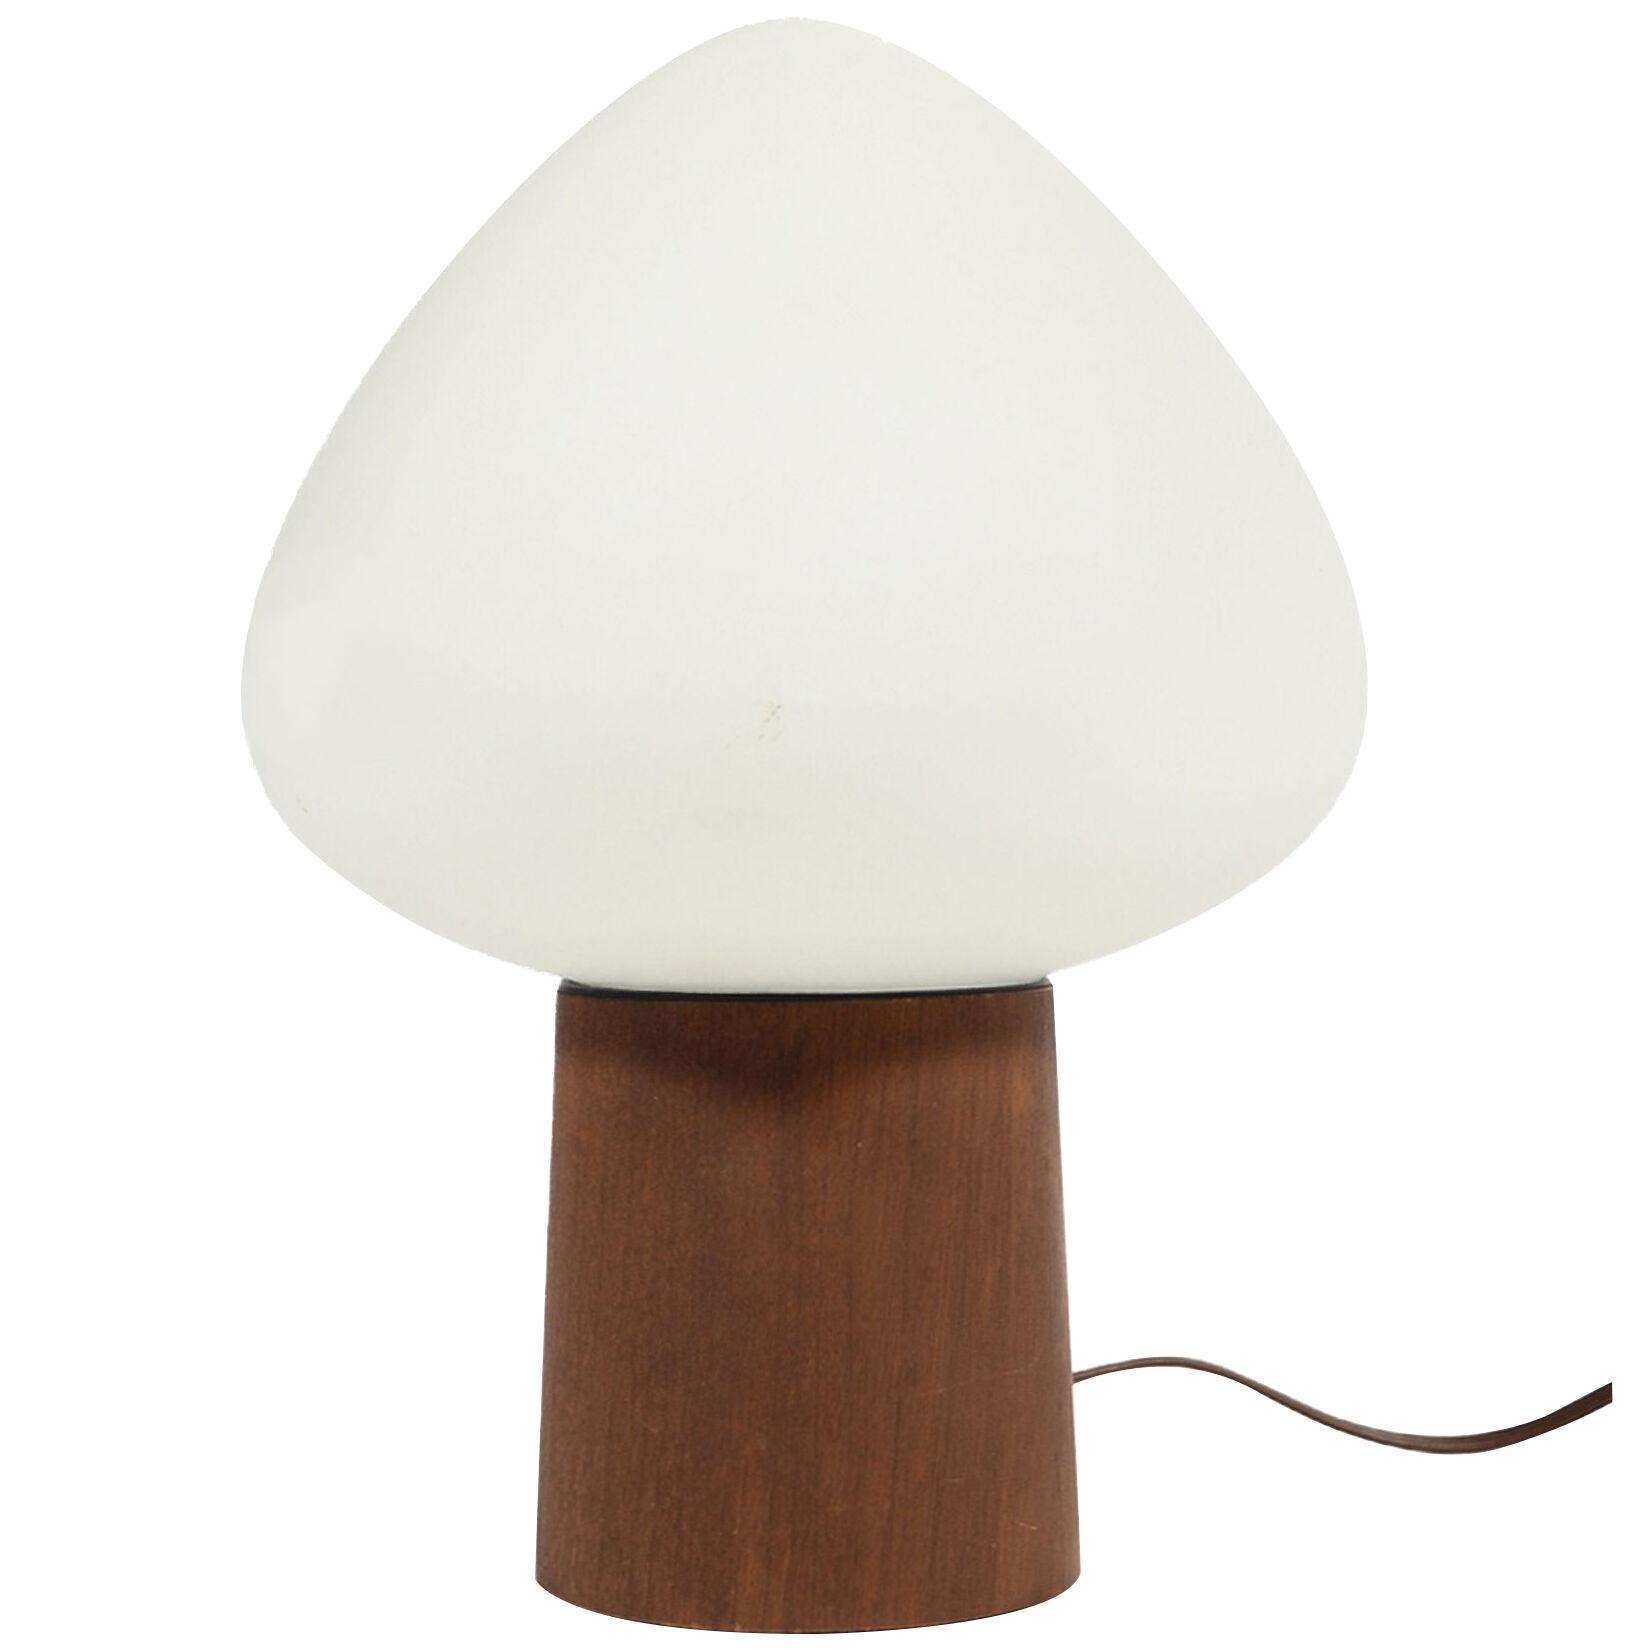 Laurel Mushroom Table Lamp with Walnut Base